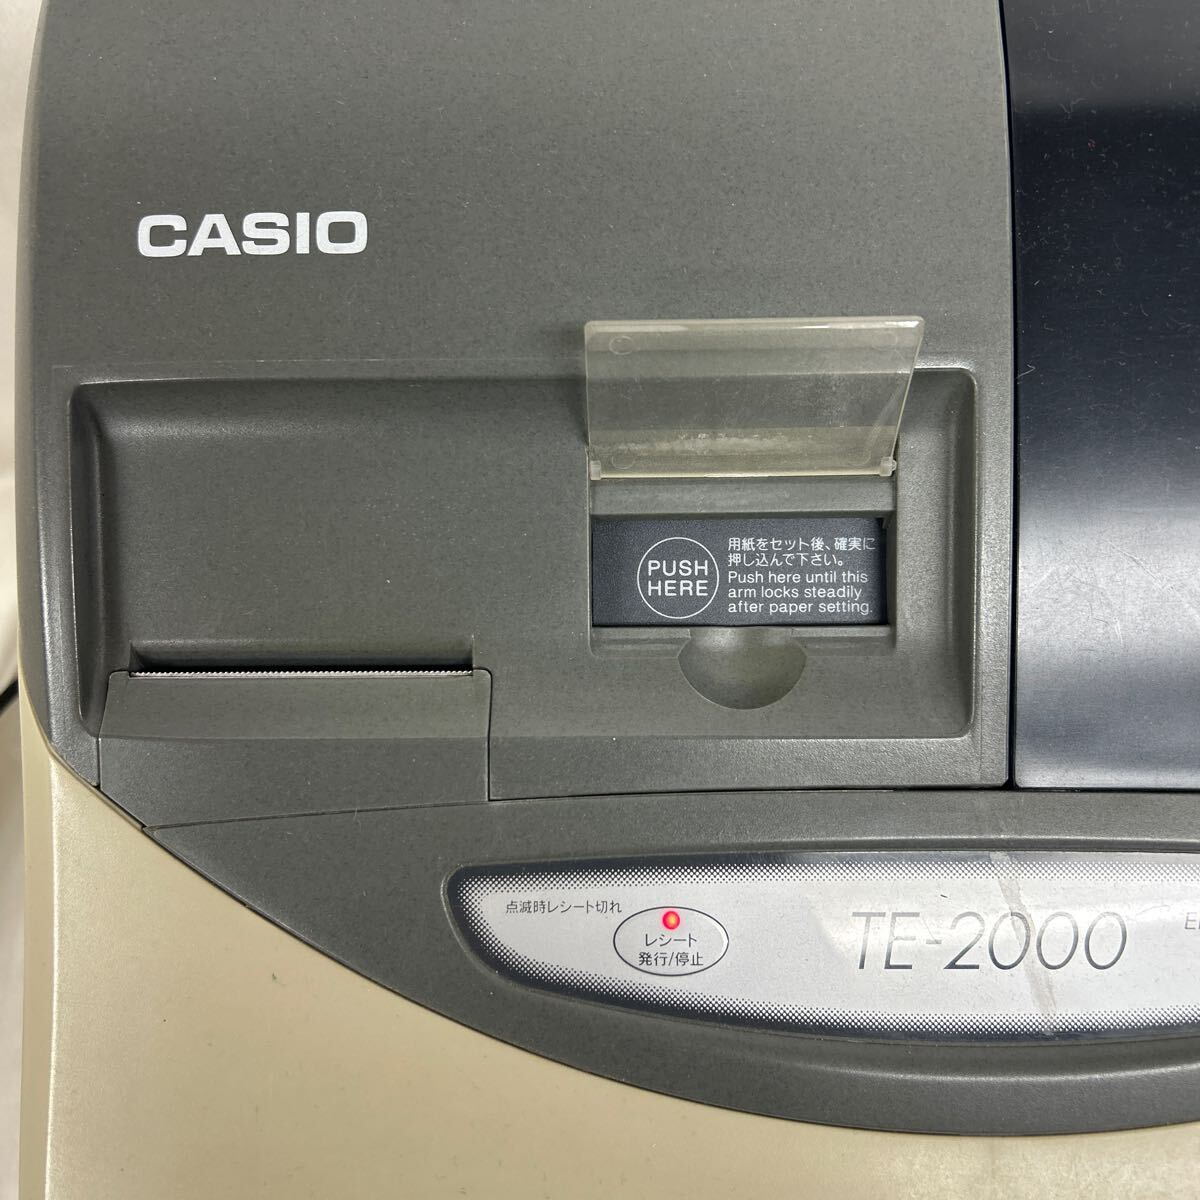 Z1287 электризация подтверждено Casio TE-2000 резистор ключ имеется практическое использование работоспособность не проверялась текущее состояние товар 